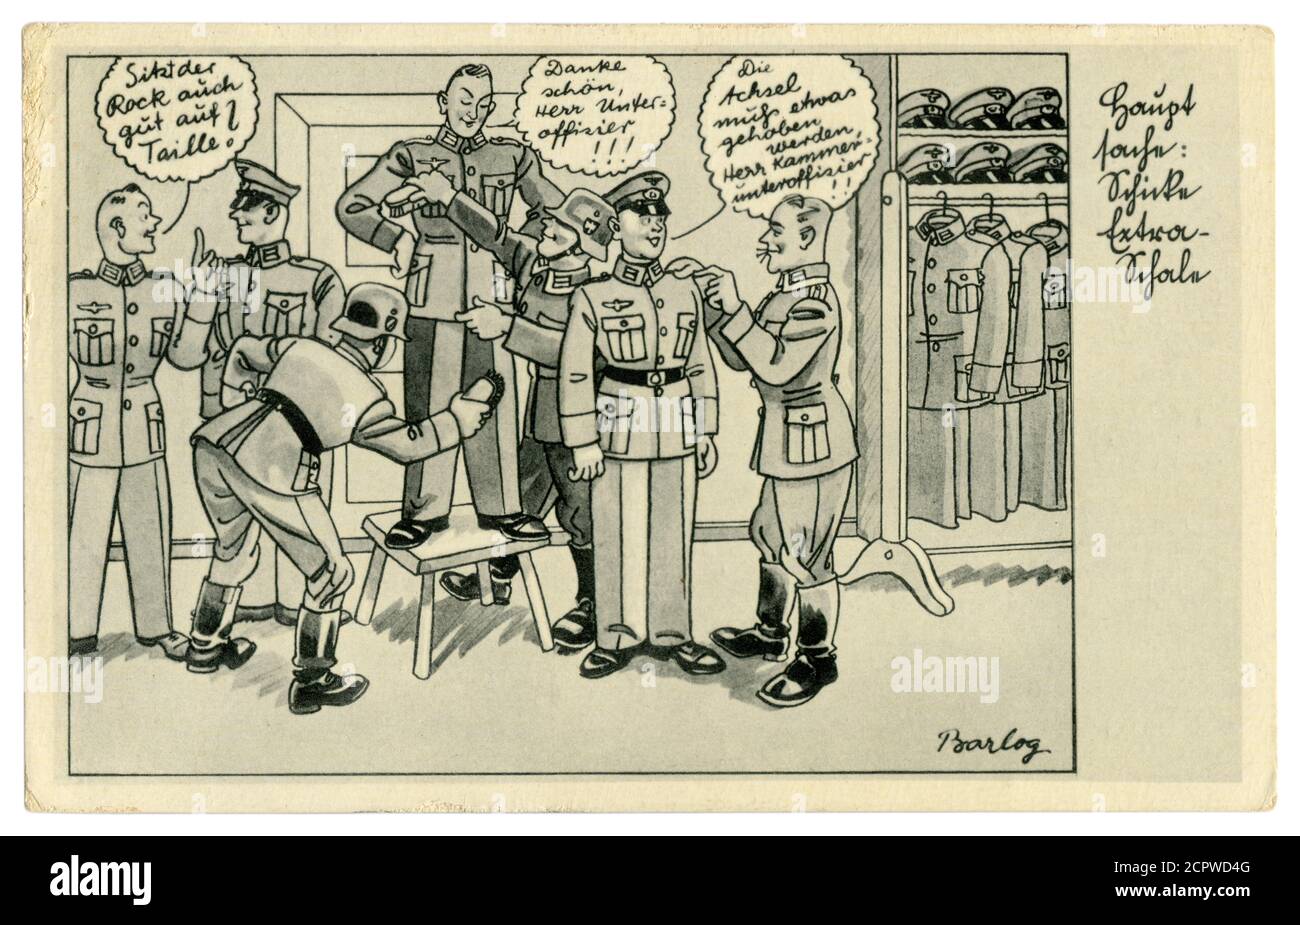 Postal histórica alemana: Un unteroffizier pone a un soldado en un nuevo uniforme militar. Cepillo el recluta, serie satírica, por Barlog, Alemania, 1939 Foto de stock